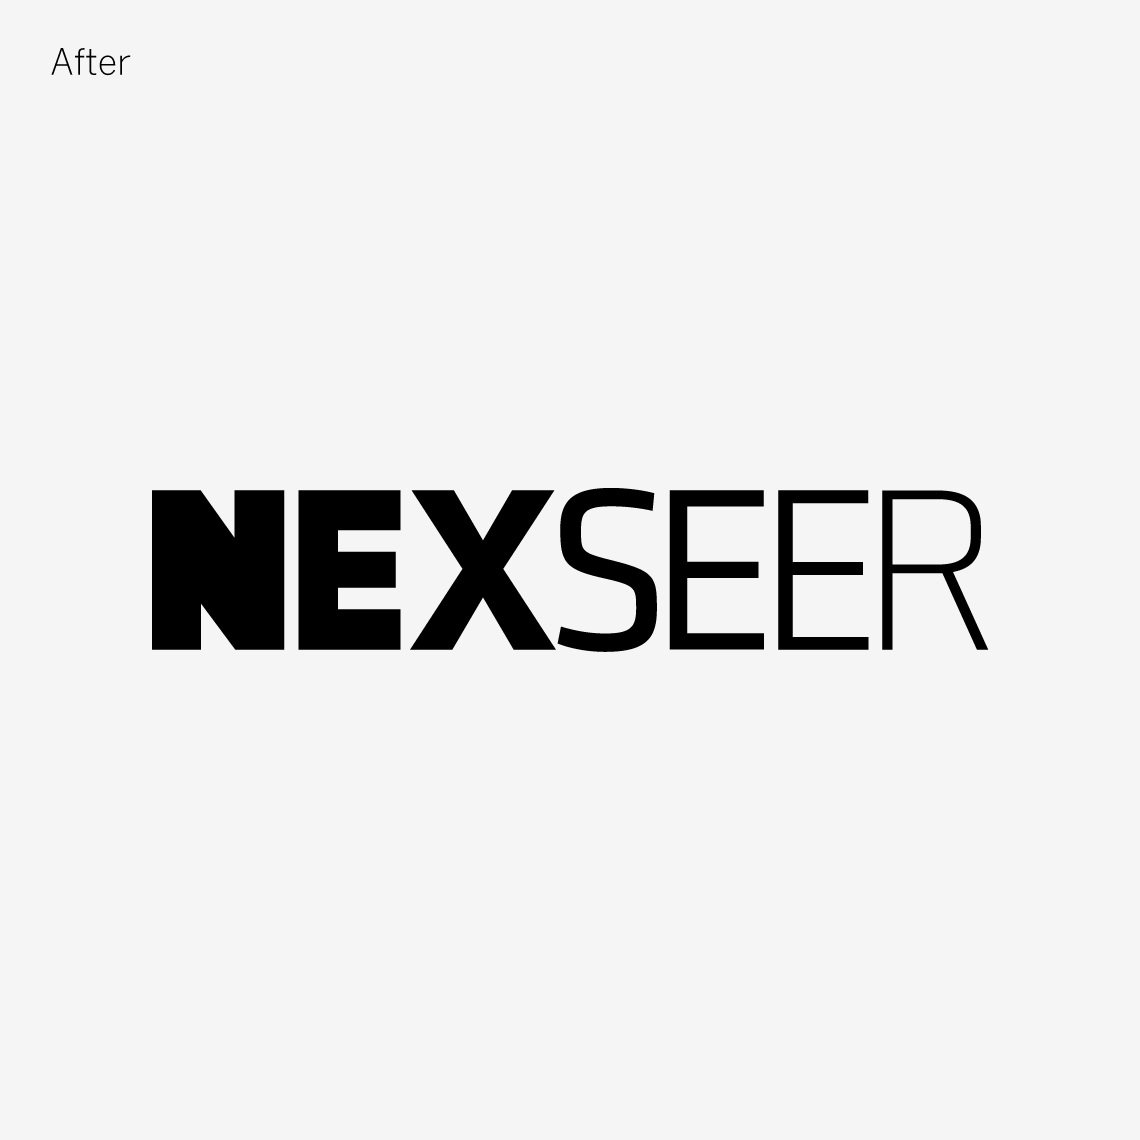 the new Nexseer brand logo